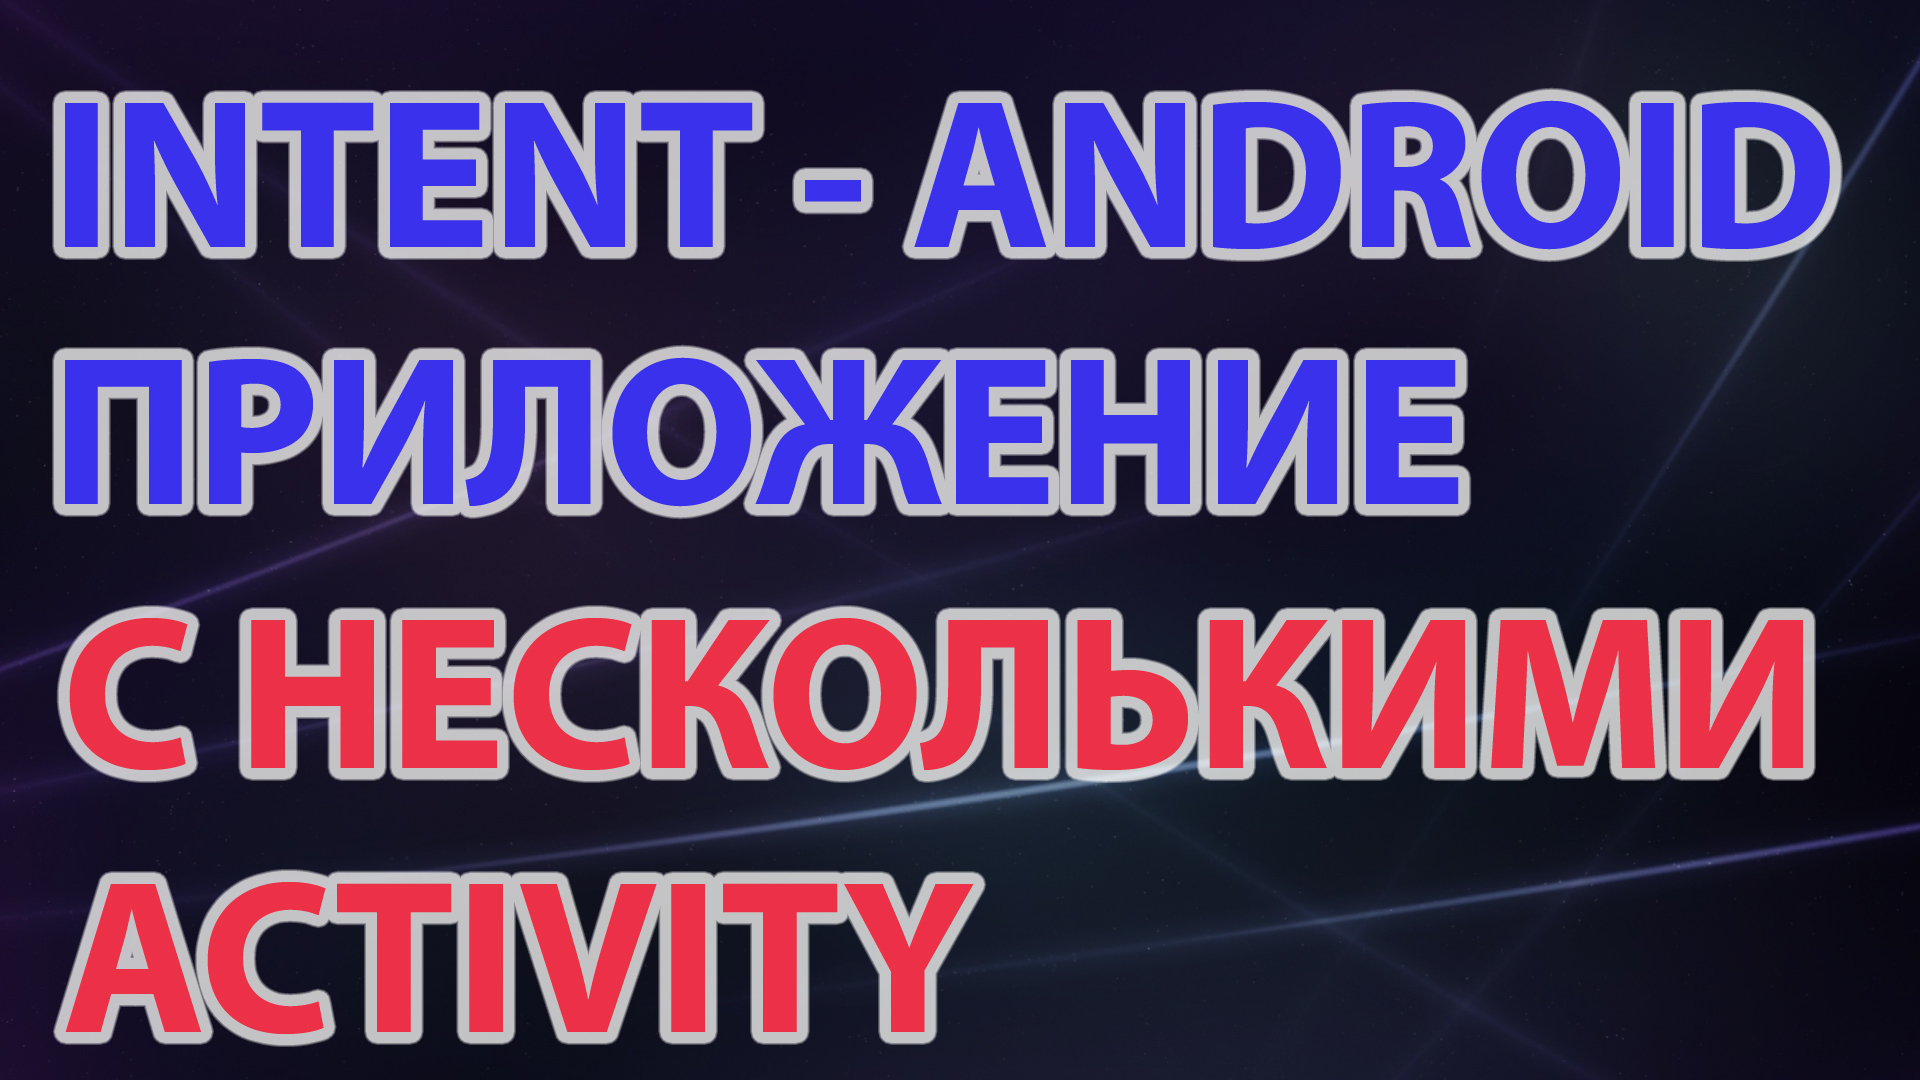 09-Intent Android приложение с несколькими Activity